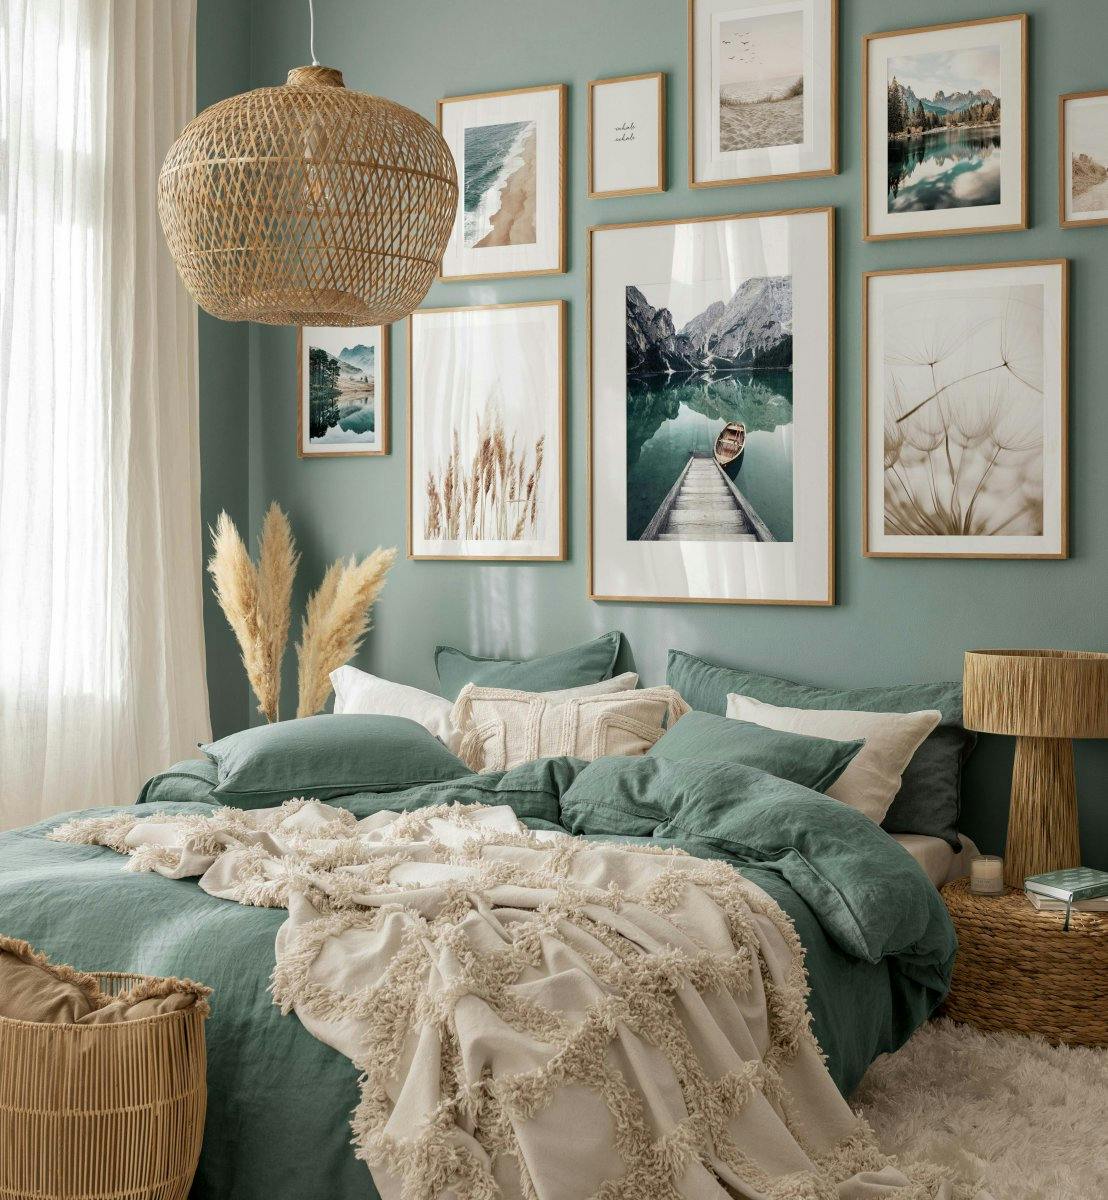 Serene natuurfoto's in beige en blauw voor slaapkamer